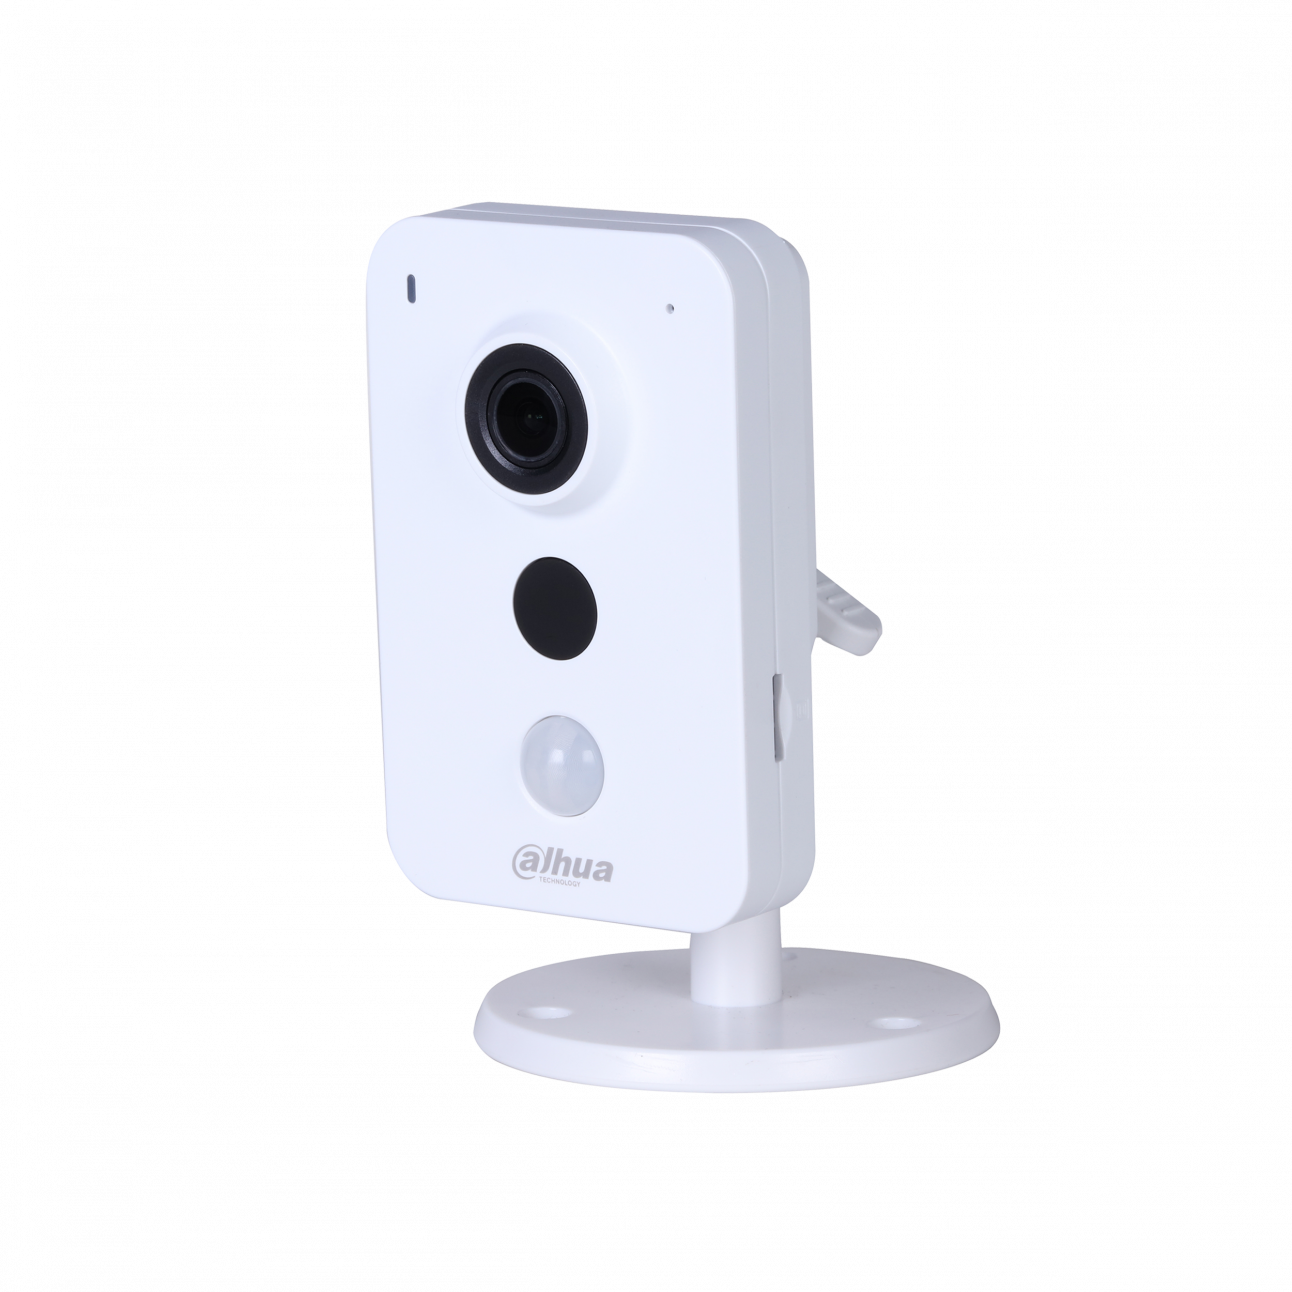 Wi-Fi камера Dahua DH-IPC-K35P миникуб 3Мп, объектив 2.8мм, 12В, microSD, встр. микрофон/динамик, DWDR, ИК до 10м